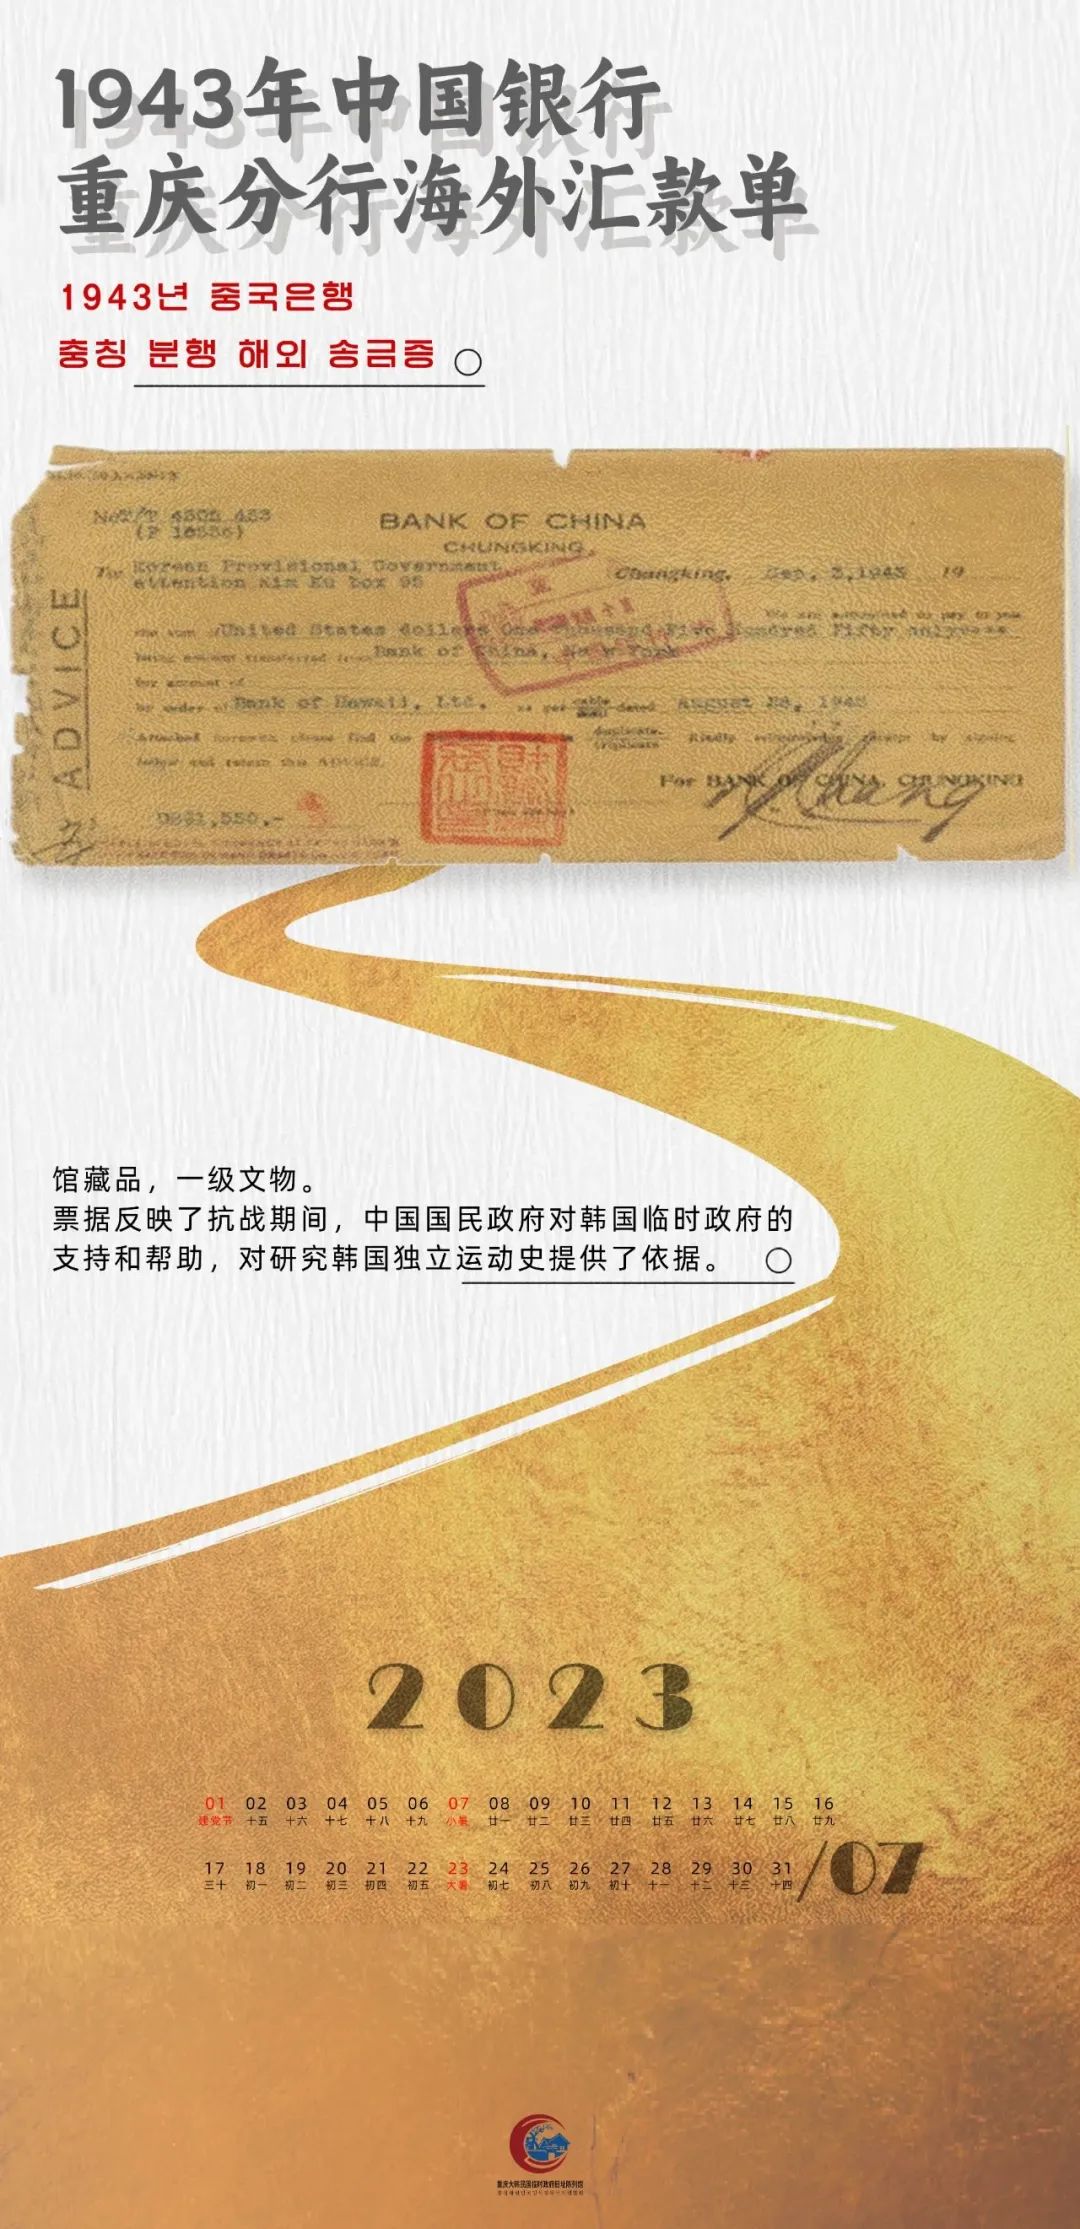 文博月历丨七月 1943年中国银行重庆分行海外汇款单